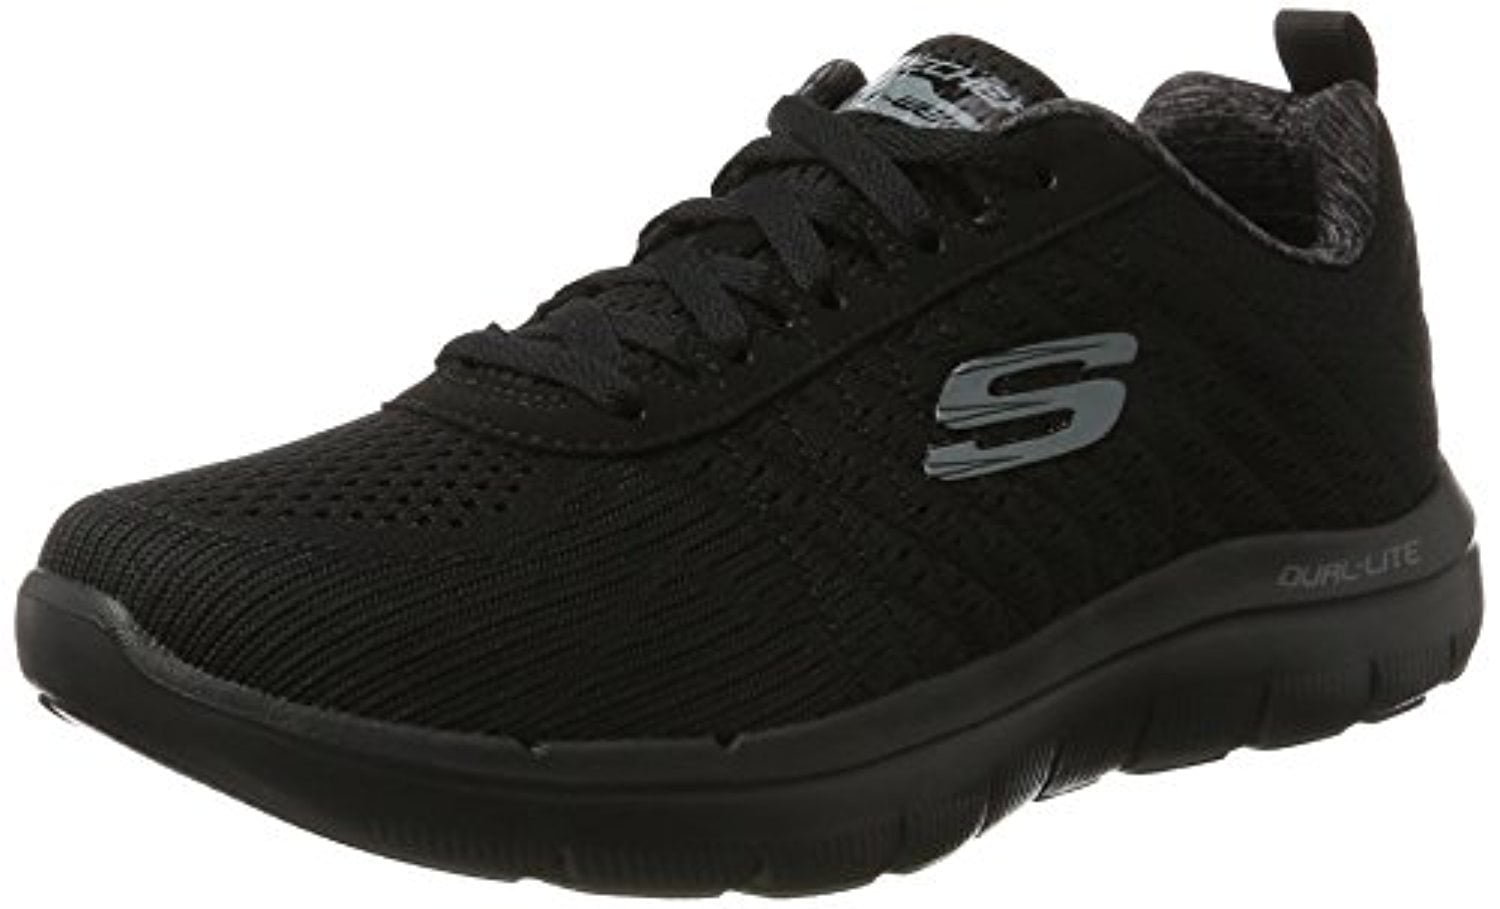 Black Skechers Shoes Men Memory Foam Comfort Sport Run Mesh Athletic -